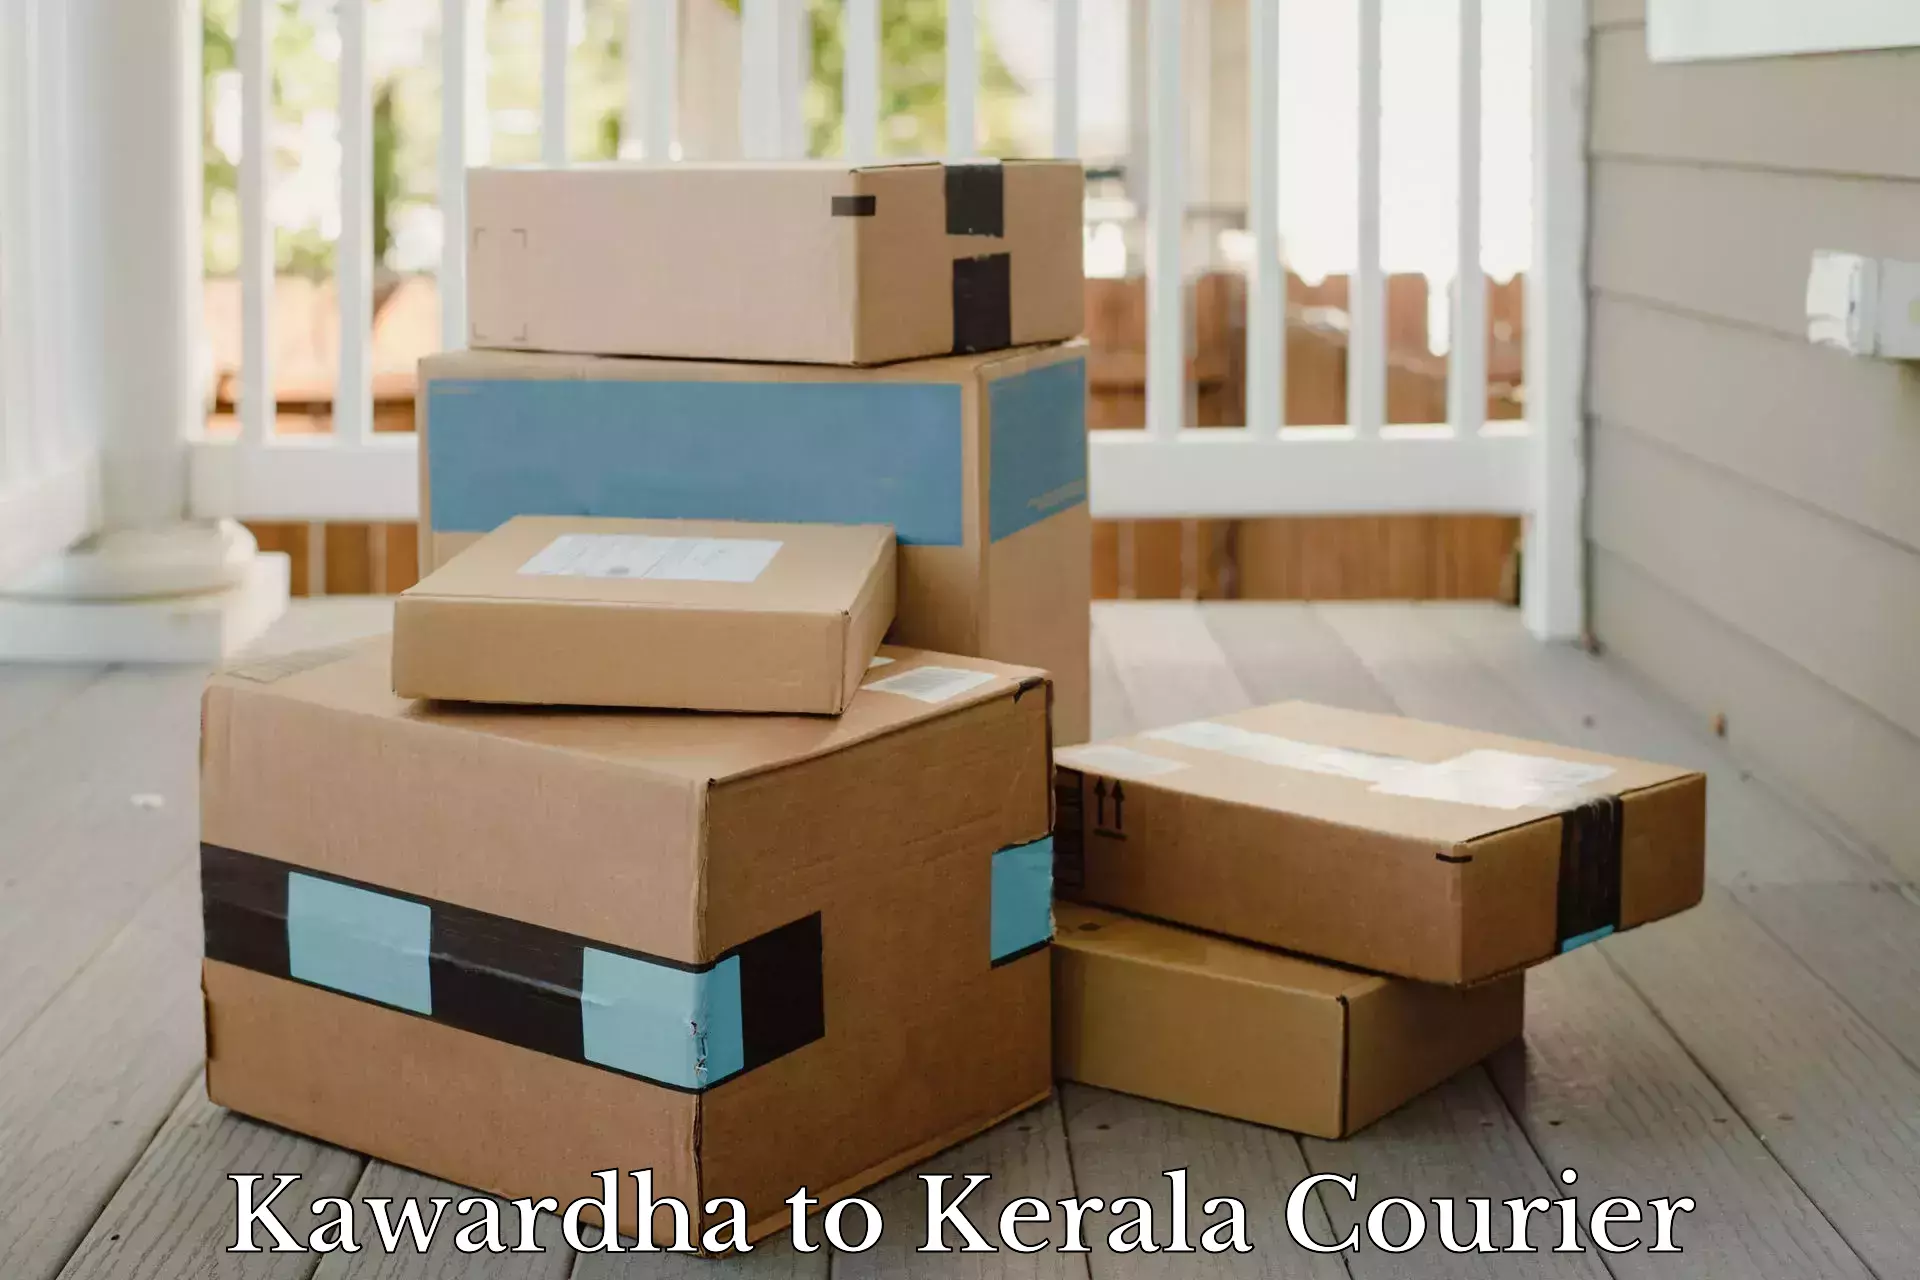 Courier services Kawardha to Manjeri